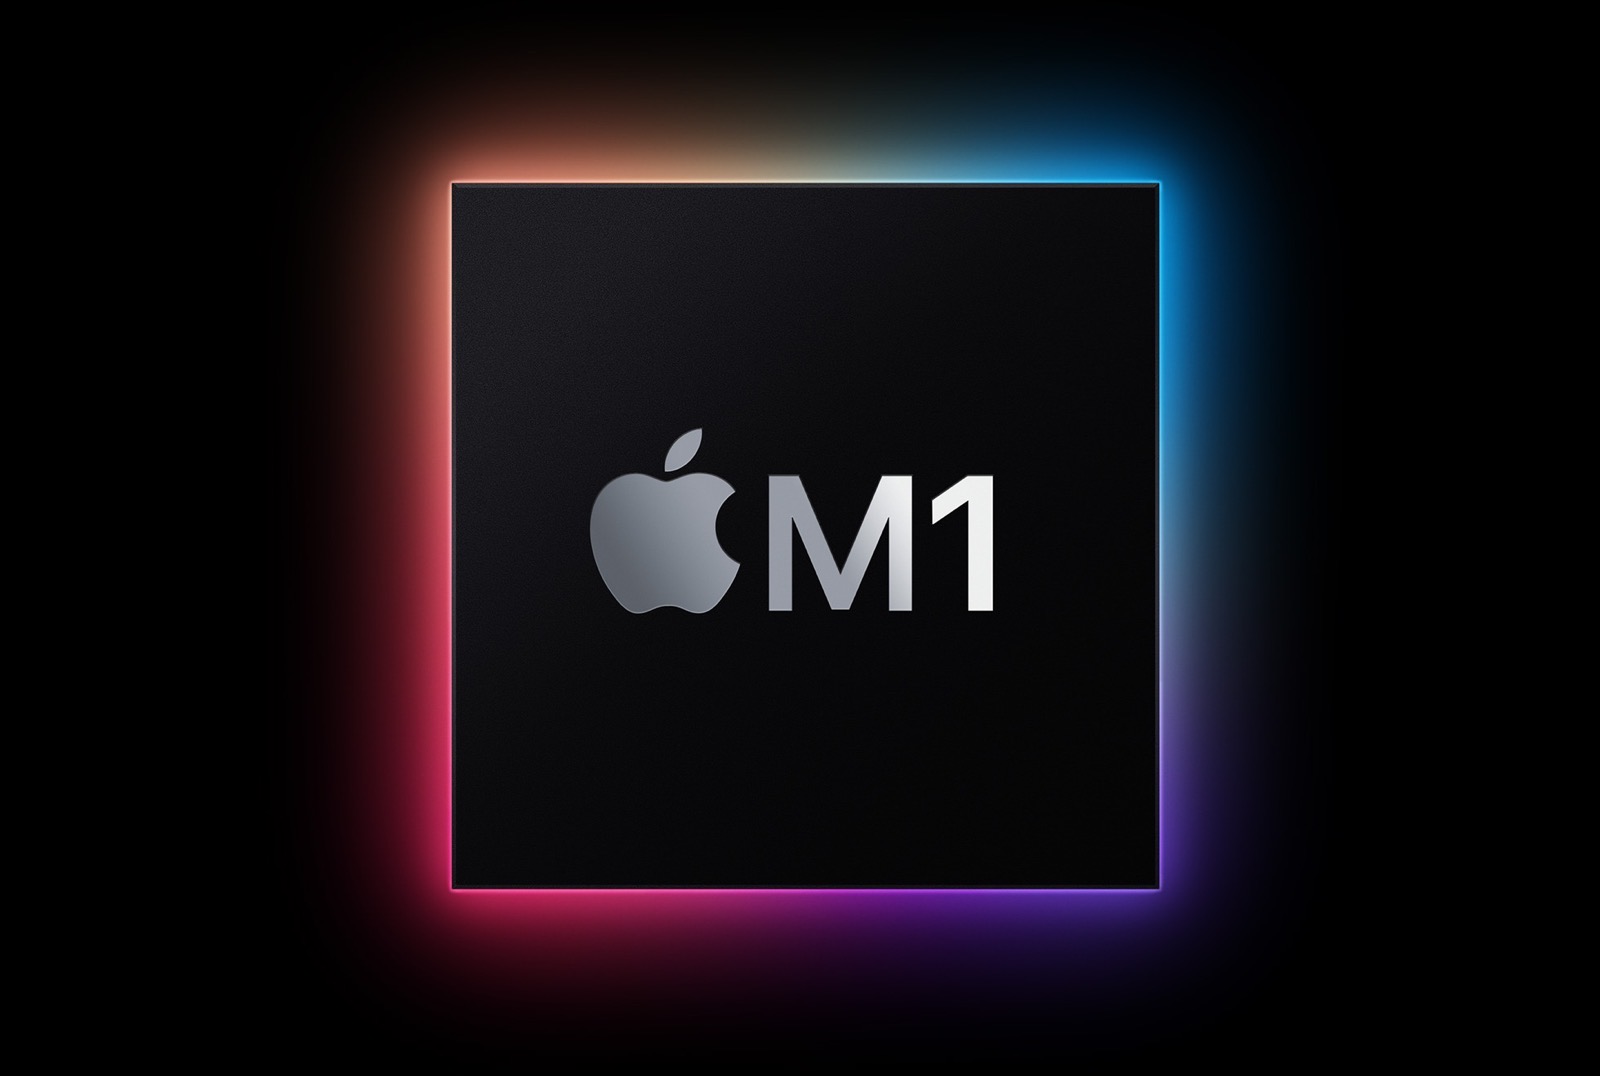 M1 mac